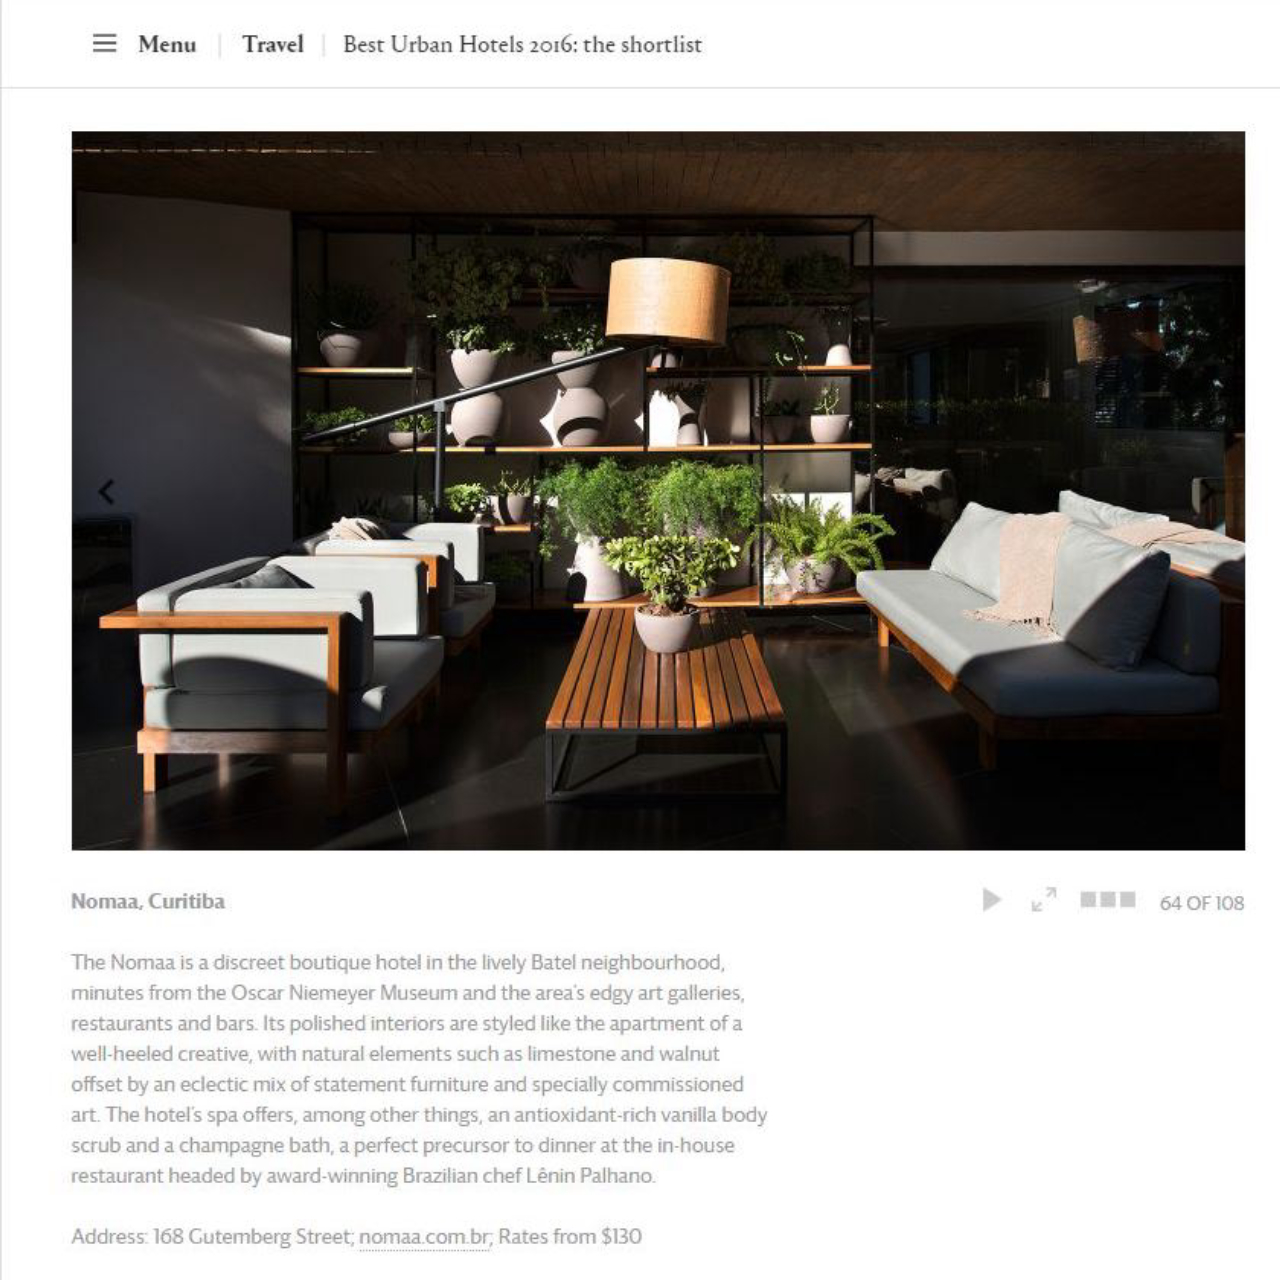 Reprodução da página da Wallpaper mostrando o Nomaa entre os finalistas do Prêmio Best Urban Hotel 2016.<br>Imagem: Reprodução 